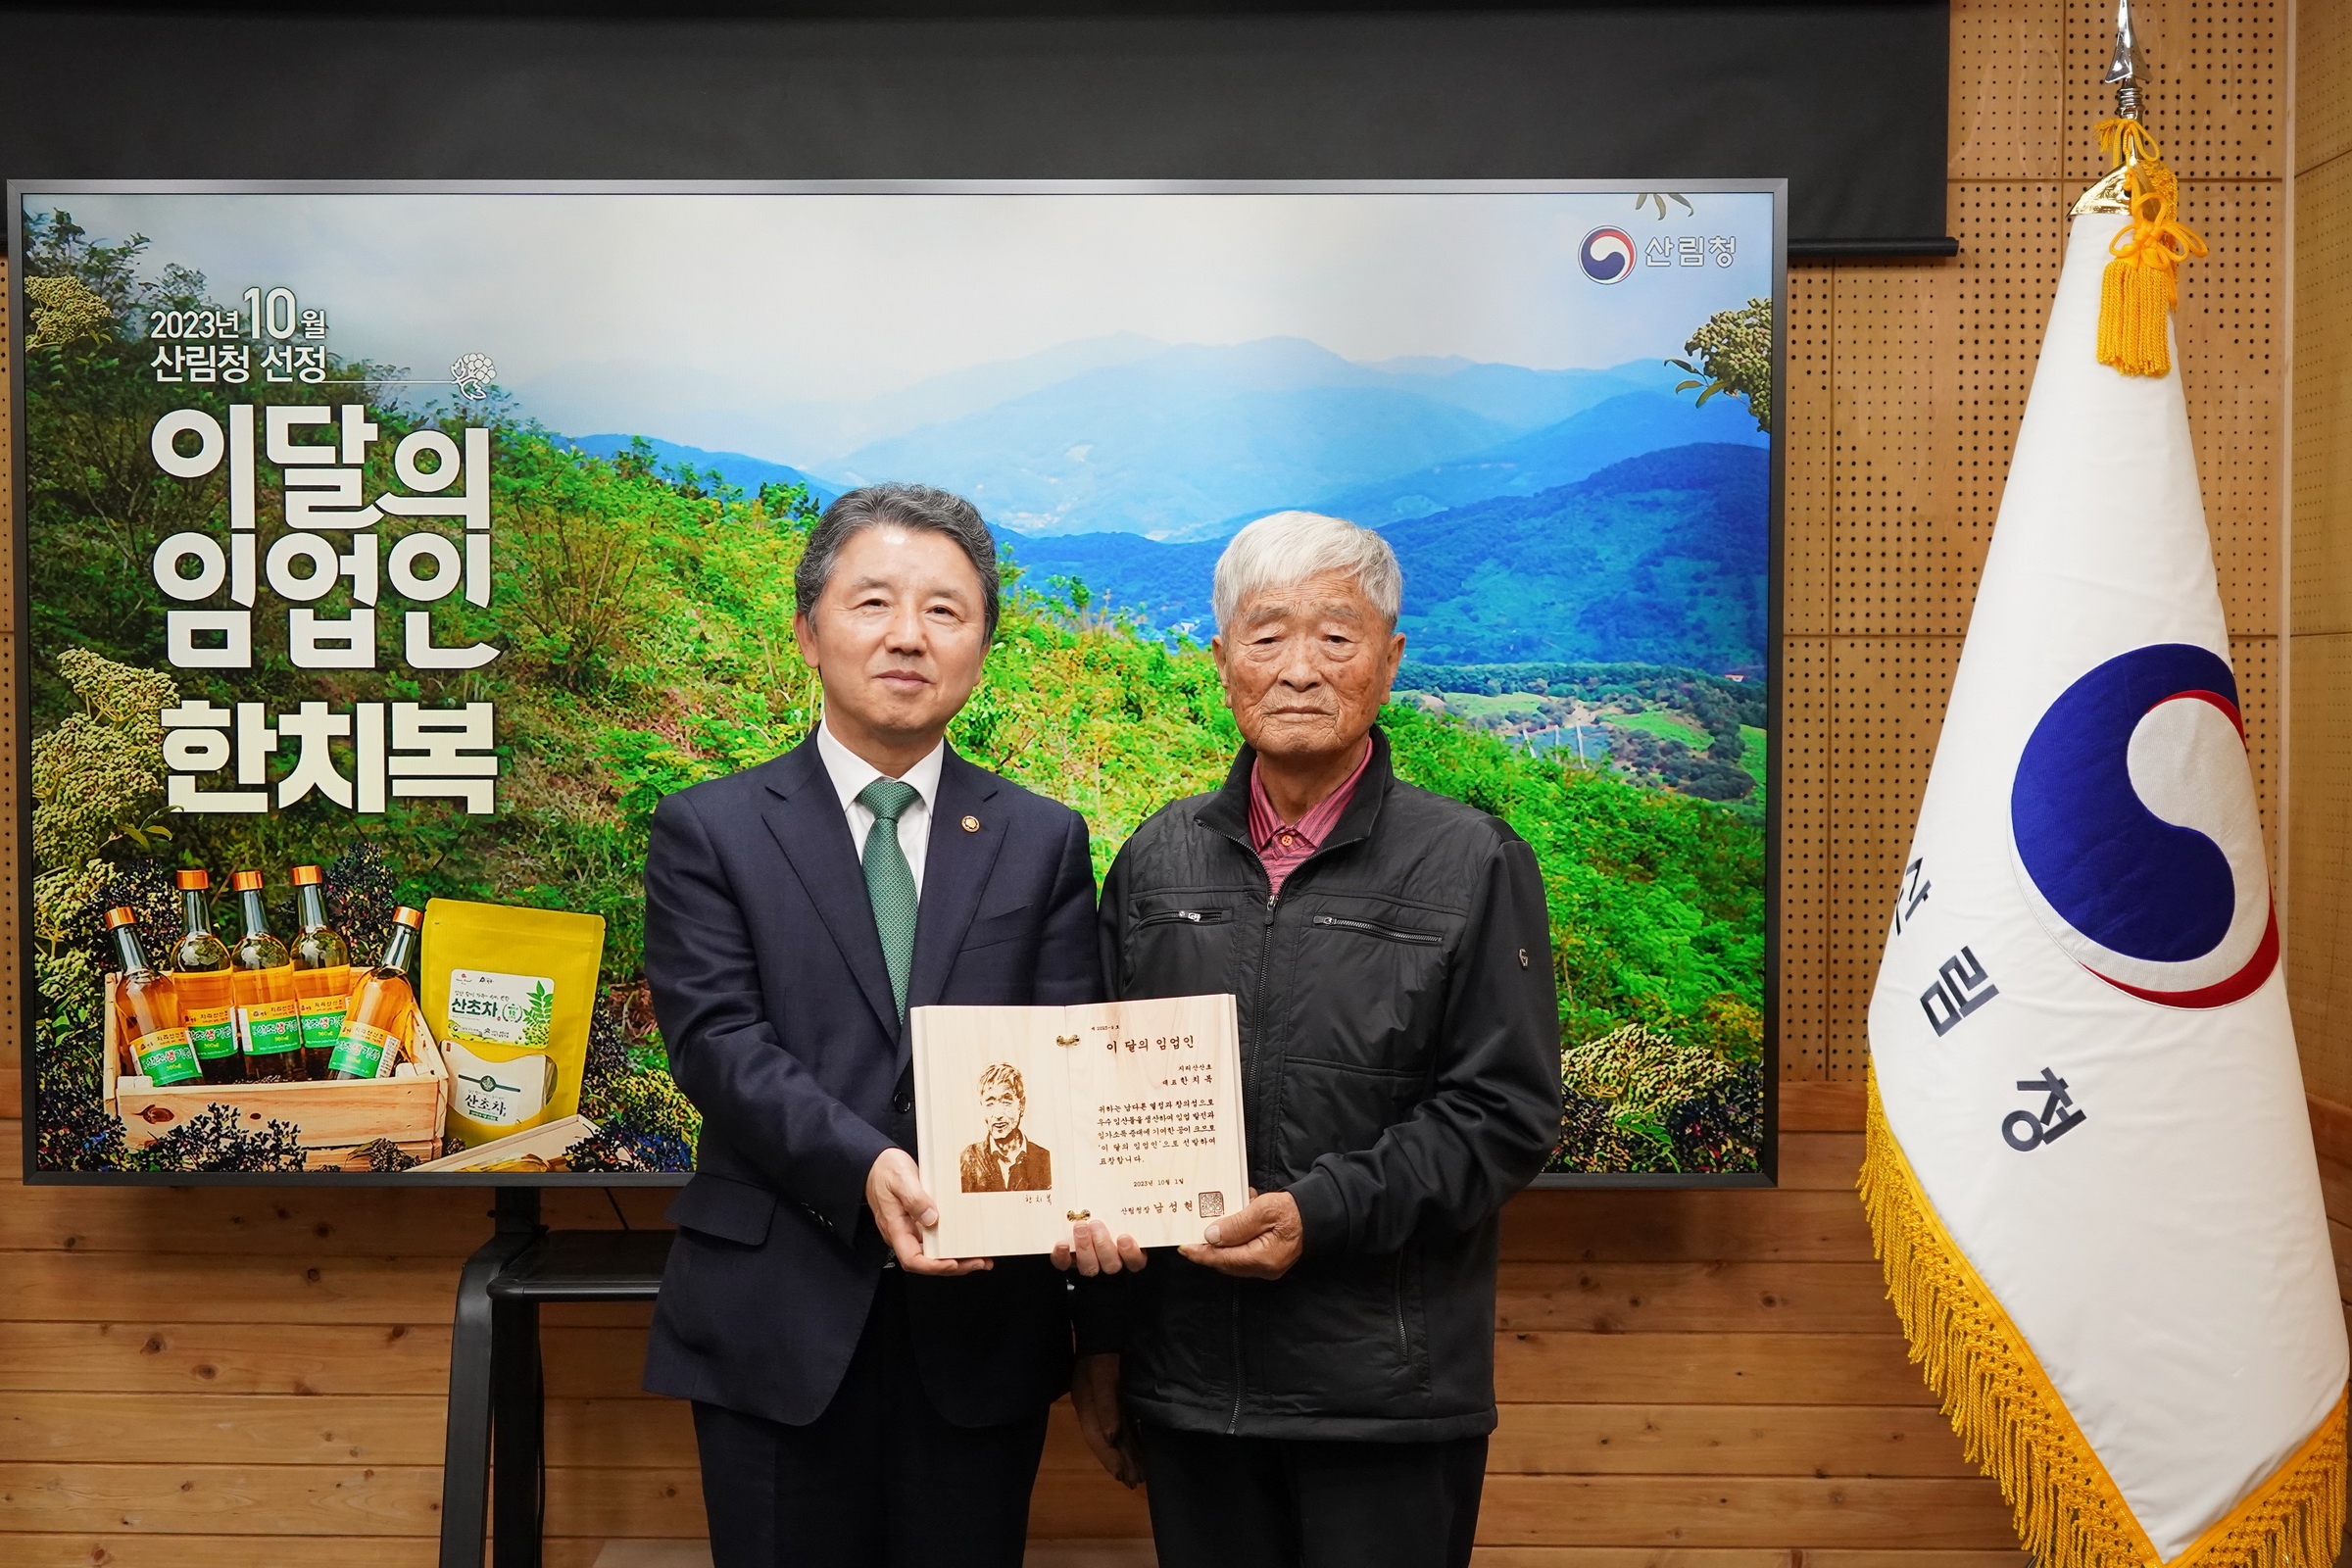 남성현 산림청장, 이달(10월)의 임업인 한치복 지리산산초 대표 포상 수여 